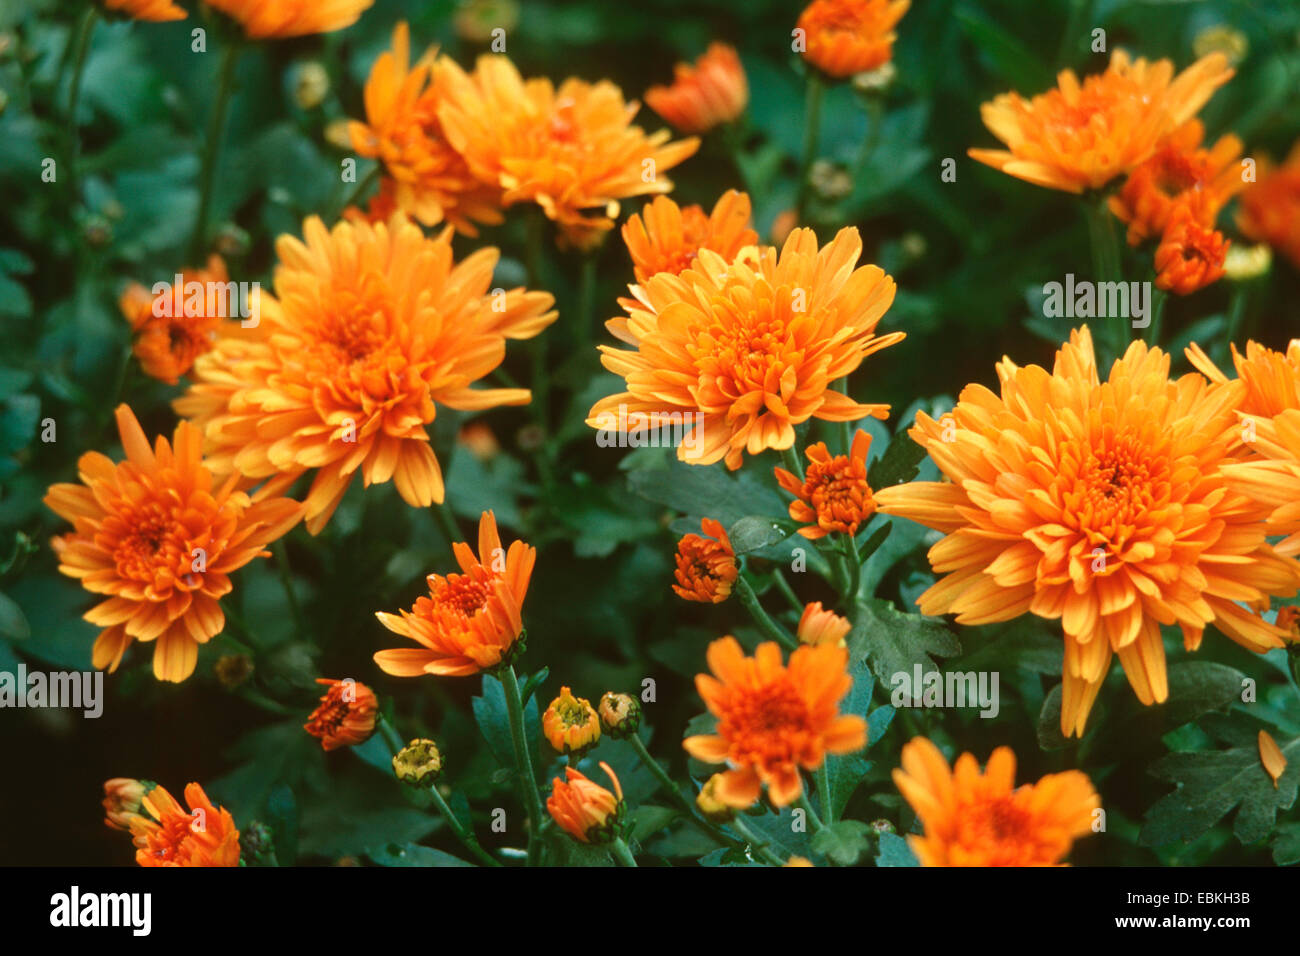 Costmary, Chinese Aster, Chrysanthemum, Mum, Garden Mum (Dendranthema x grandiflorum, Dendranthema grandiflorum, Dendranthema indica, Chrysanthemum indicum, Chrysanthemum grandiflorum, Chrysanthemum x grandiflorum), blooming Stock Photo